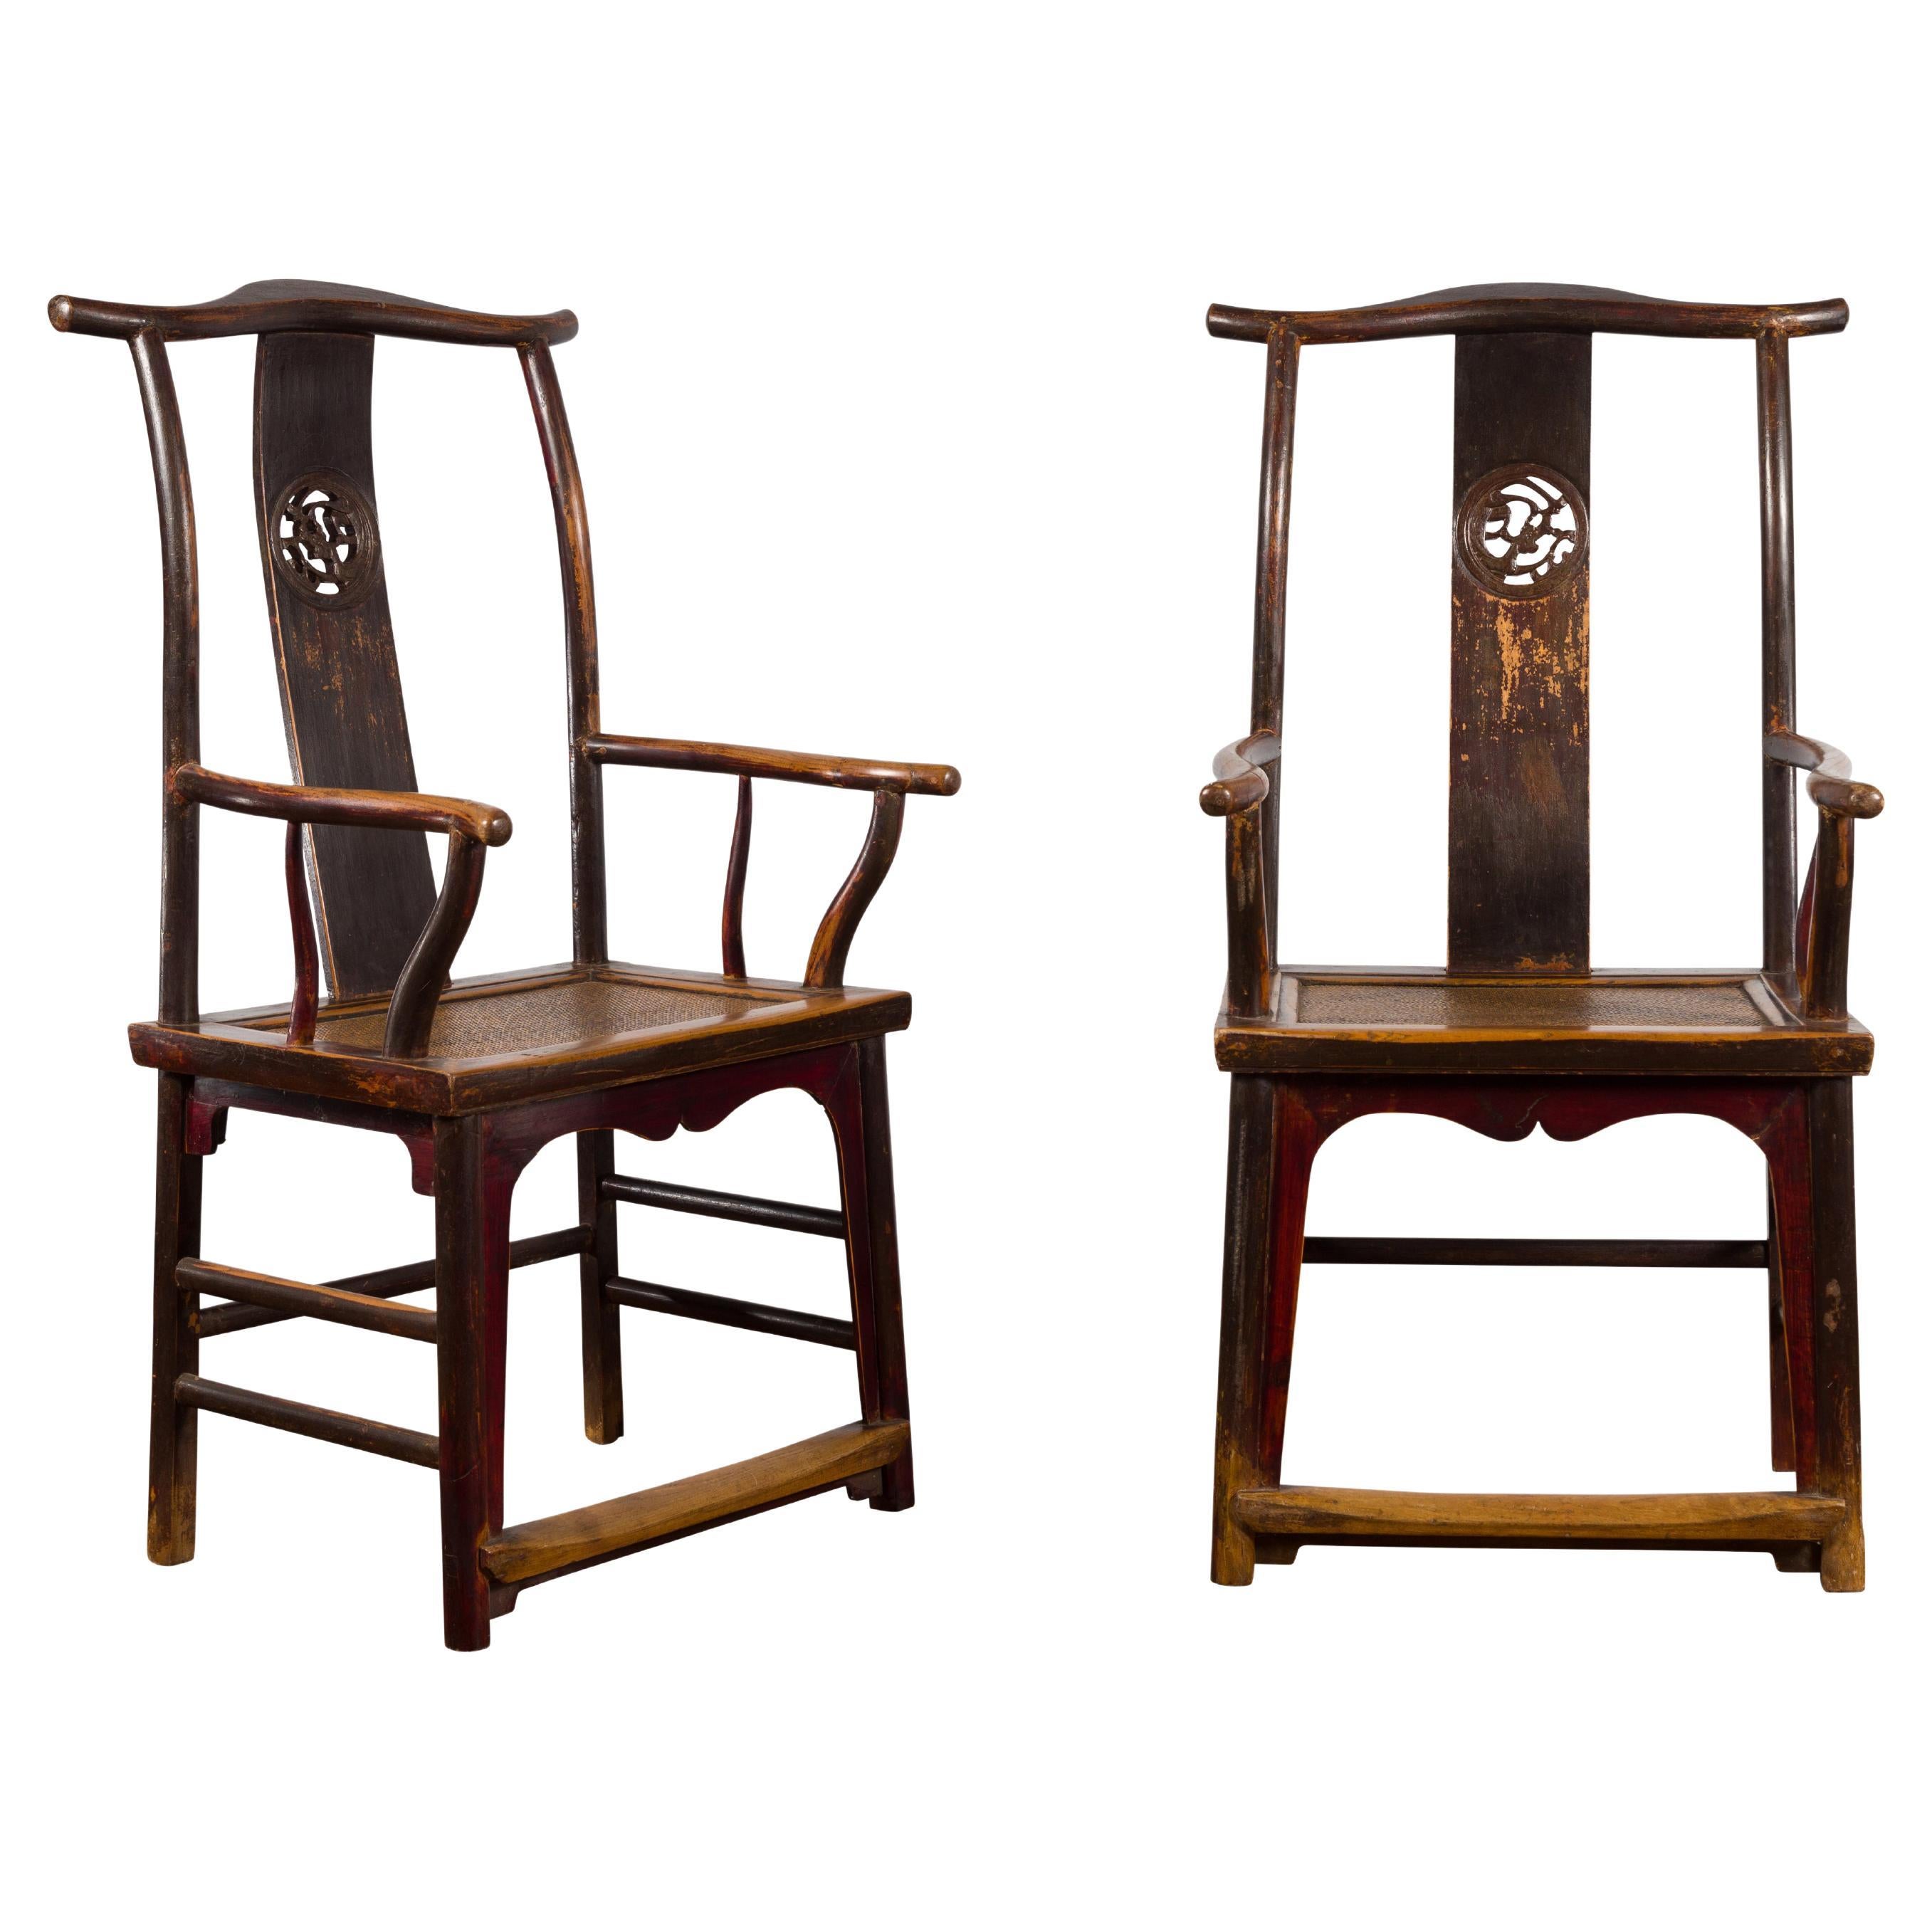 Paire de fauteuils à dossier à empiècement de la dynastie chinoise Qing du XIXe siècle avec sièges en rotin